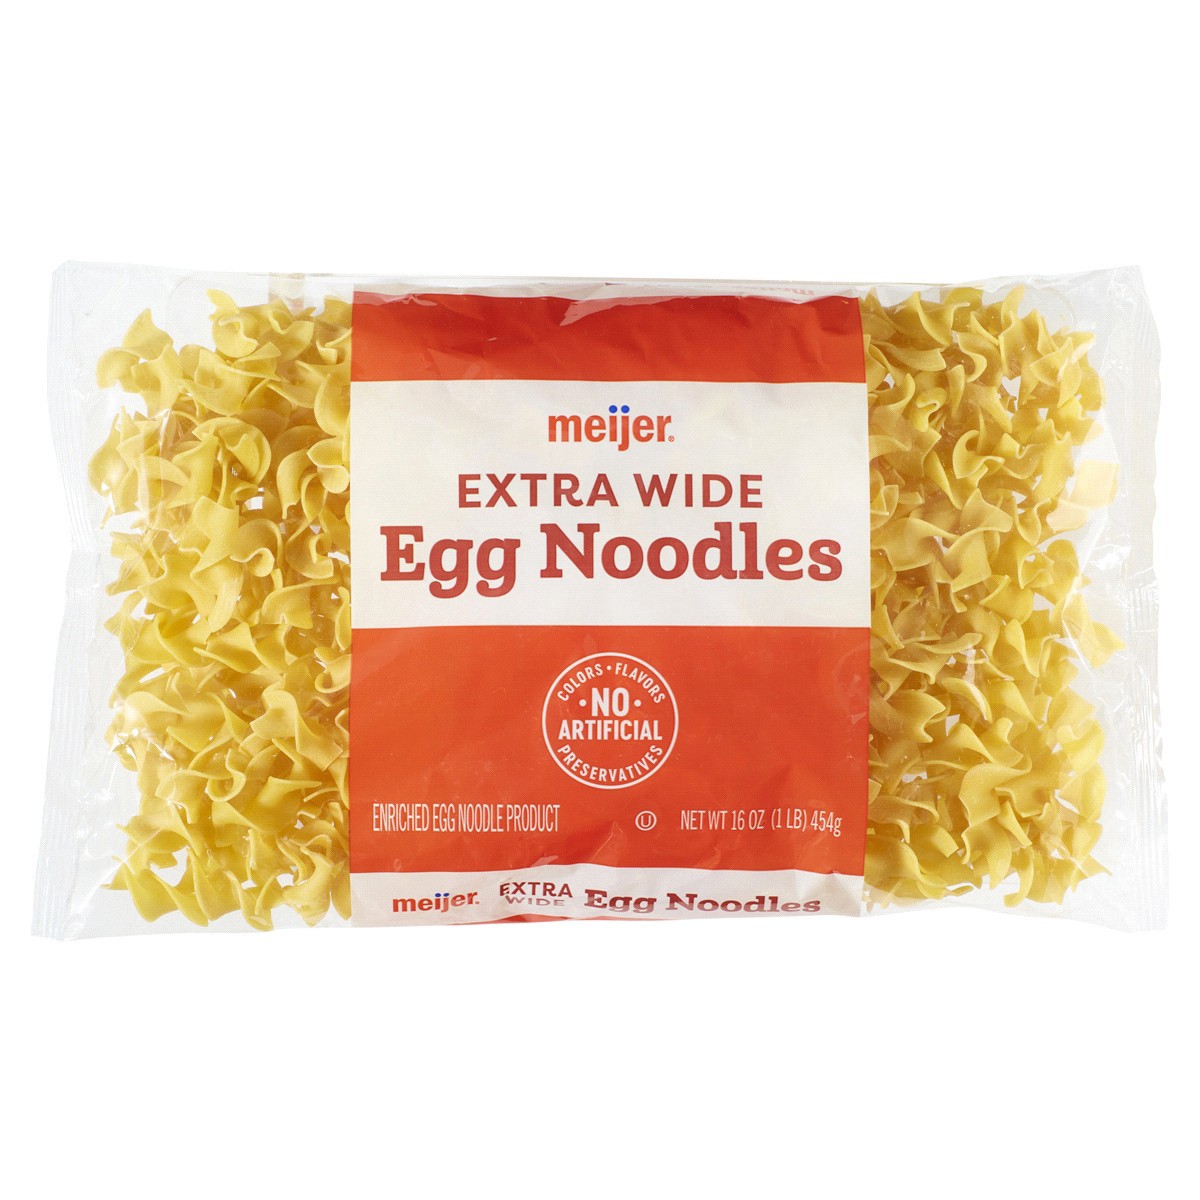 slide 1 of 29, Meijer Egg Noodles Extra Wide, 16 oz